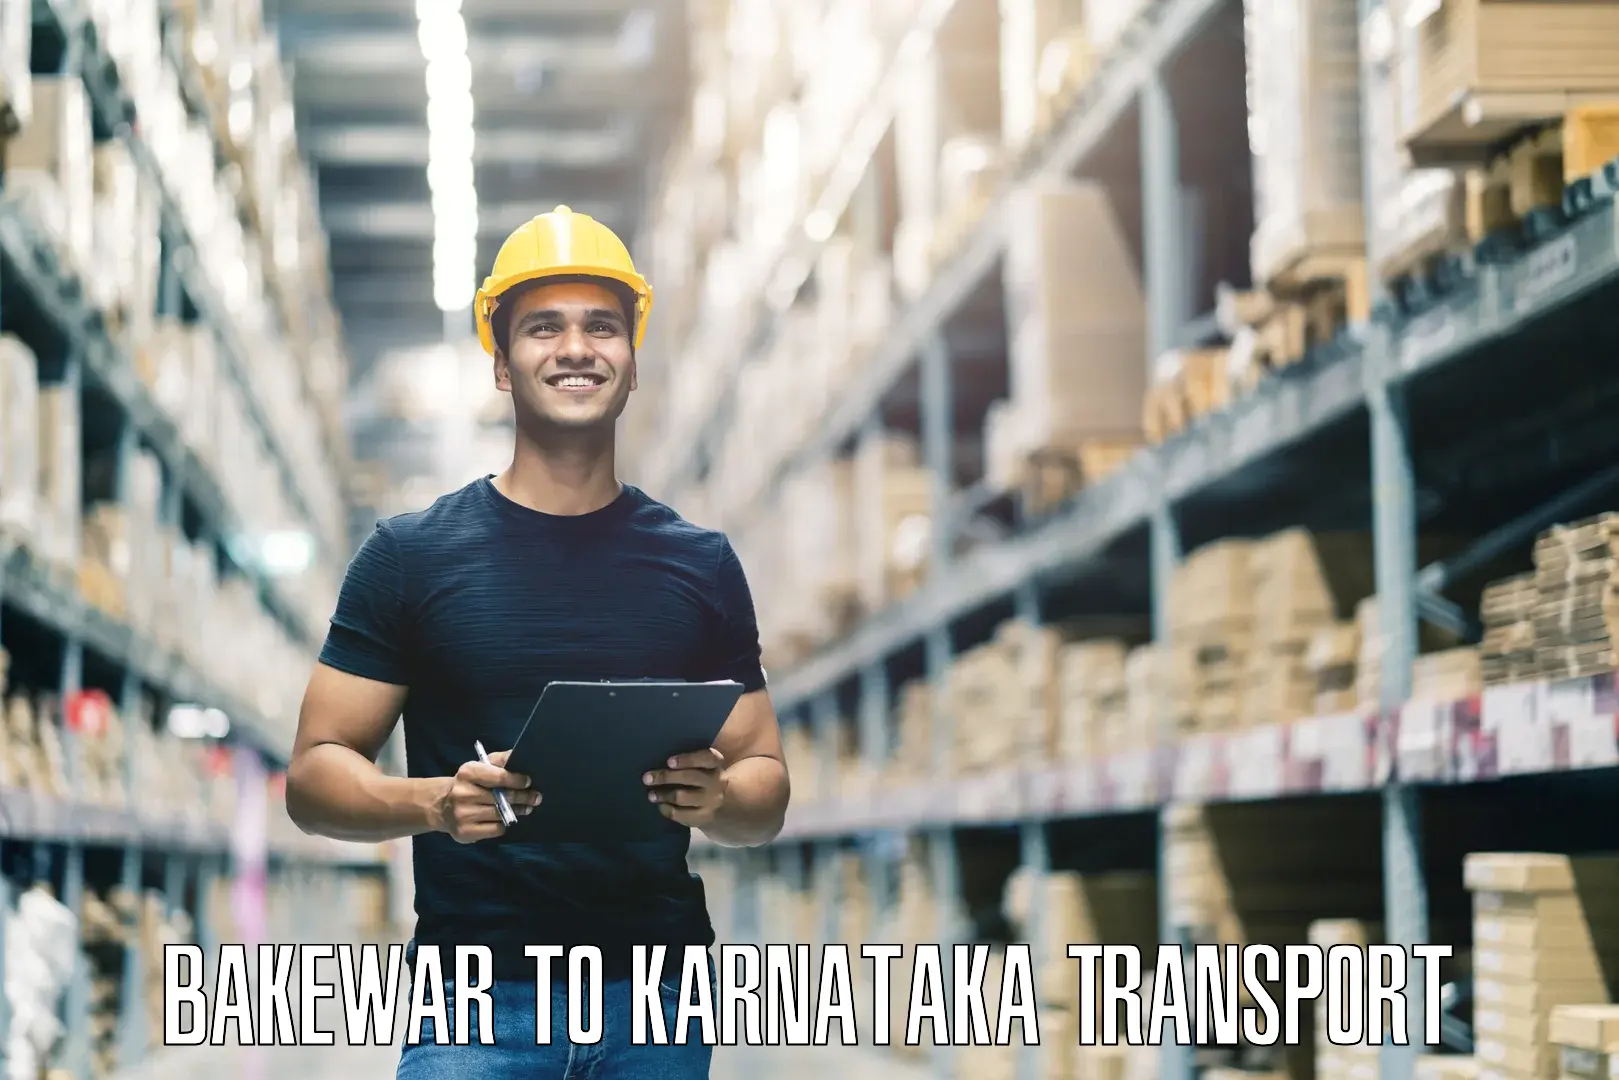 Transport services Bakewar to Karnataka